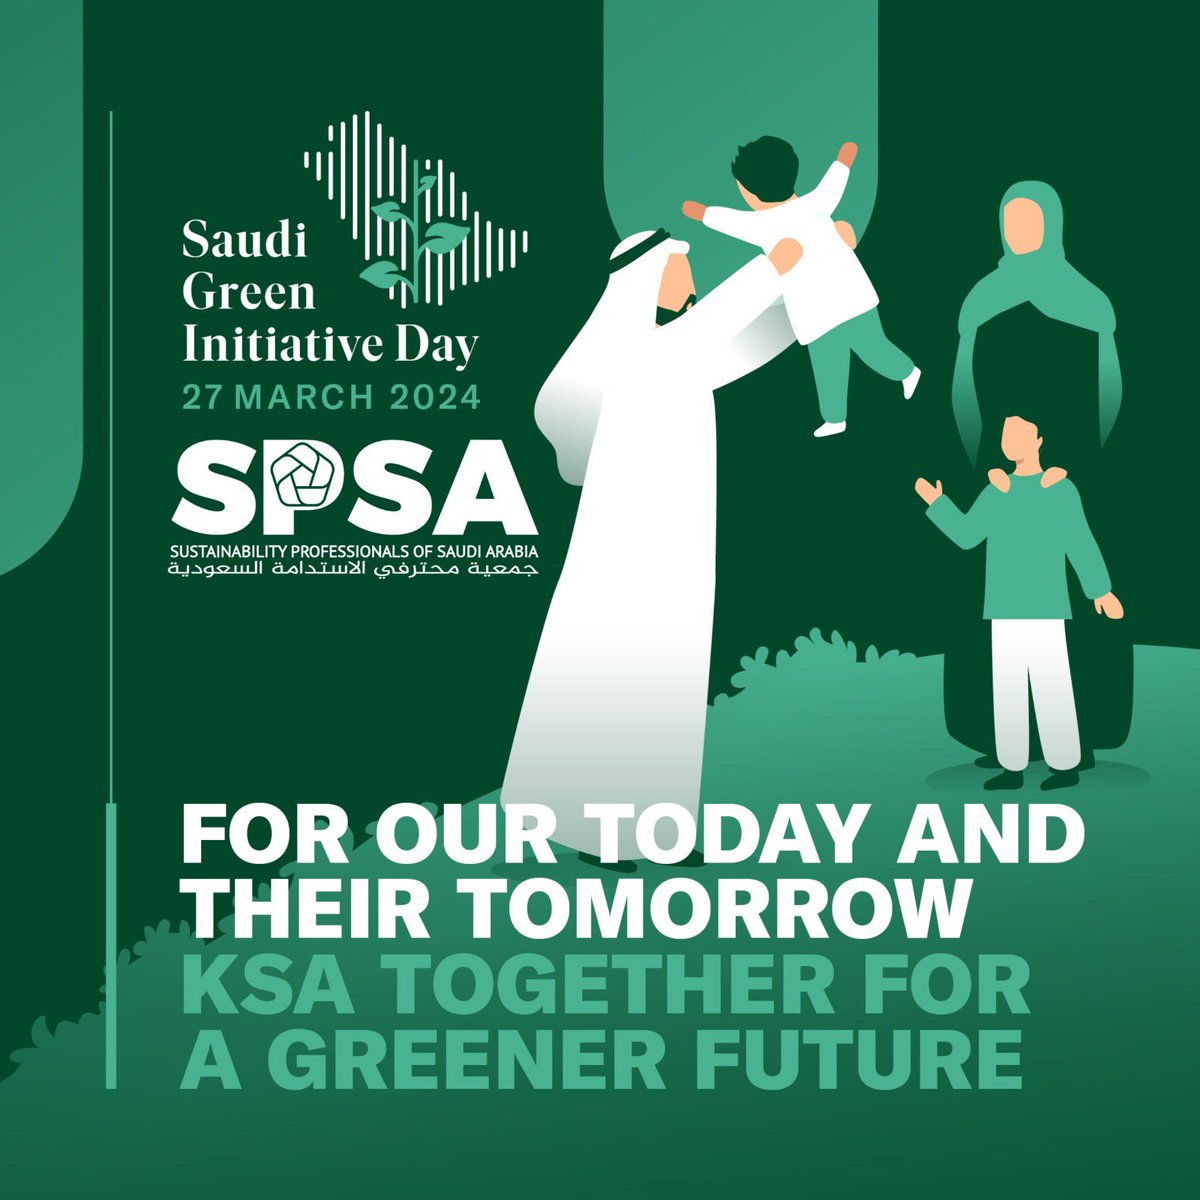 اتعهد بالمساهمة في بناء مستقبل مستدام بالمملكة 'لحاضرنا ومستقبلهم، نمضي لغدٍ أكثر استدامة' #saudi_green_initiative_day @gi_saudi @susprosaudi #sustainability #saudiarabia #يوم_مبادرة_السعودية_الخضراء